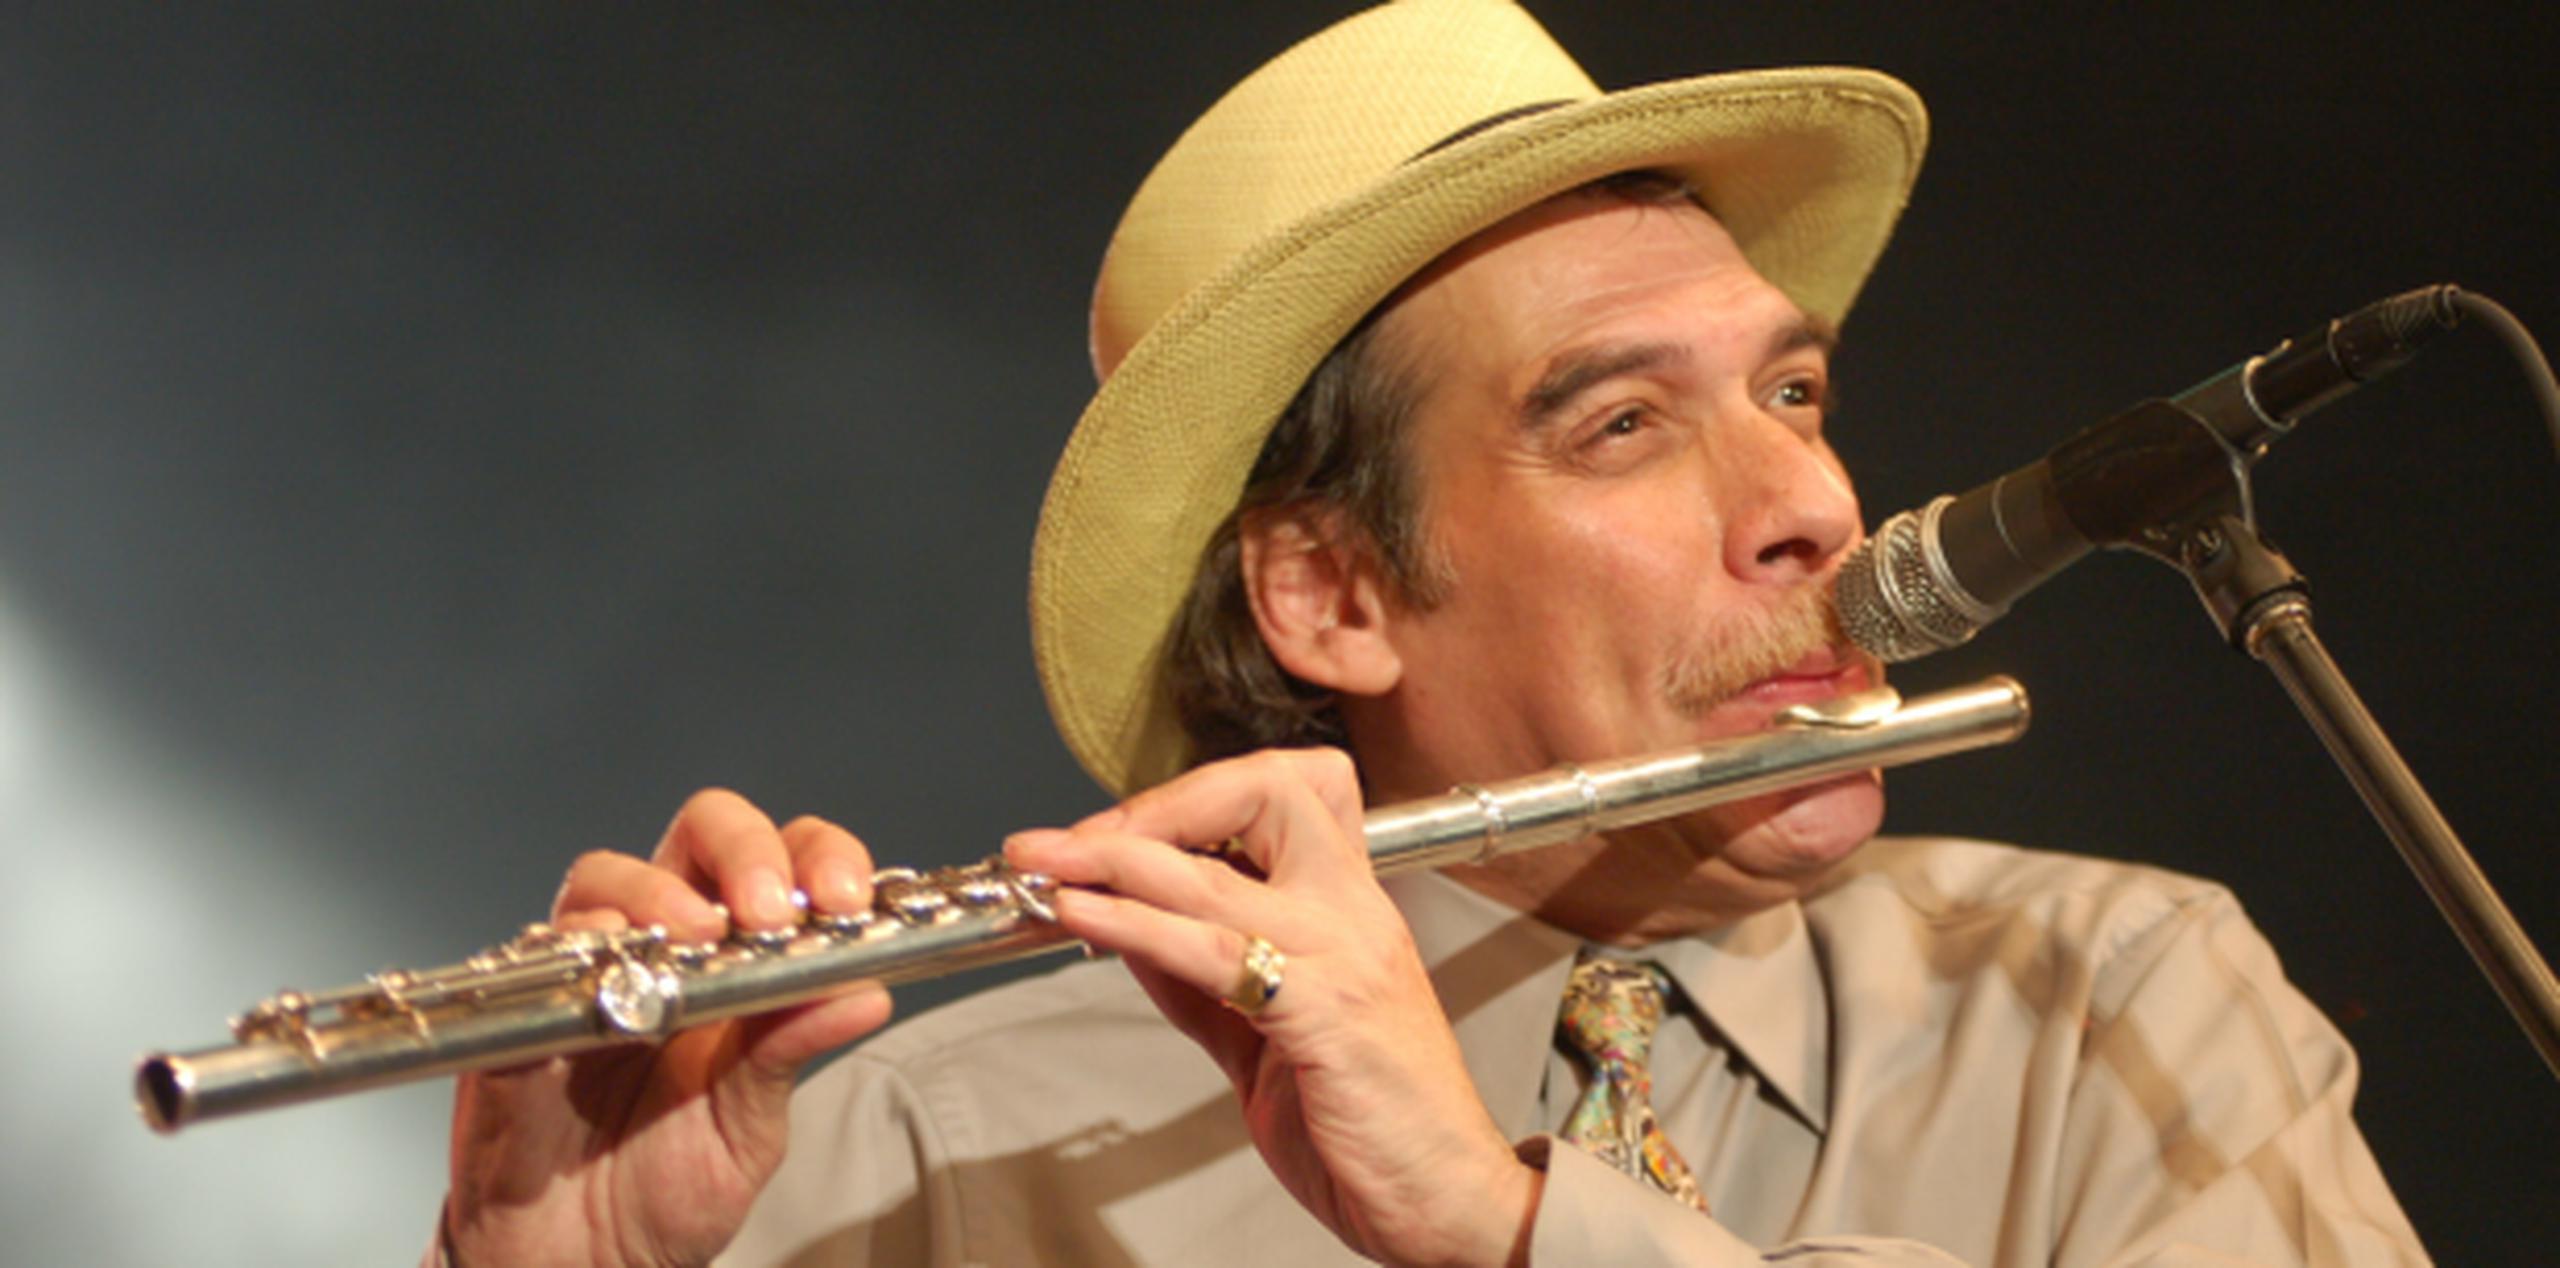 El flautista, uno de los músicos emblemáticos de la escena del jazz latino, ganó el premio Grammy en 2003 por el disco Caribbean Jazz Project, que grabó con Dave Samuels. (Archivo)